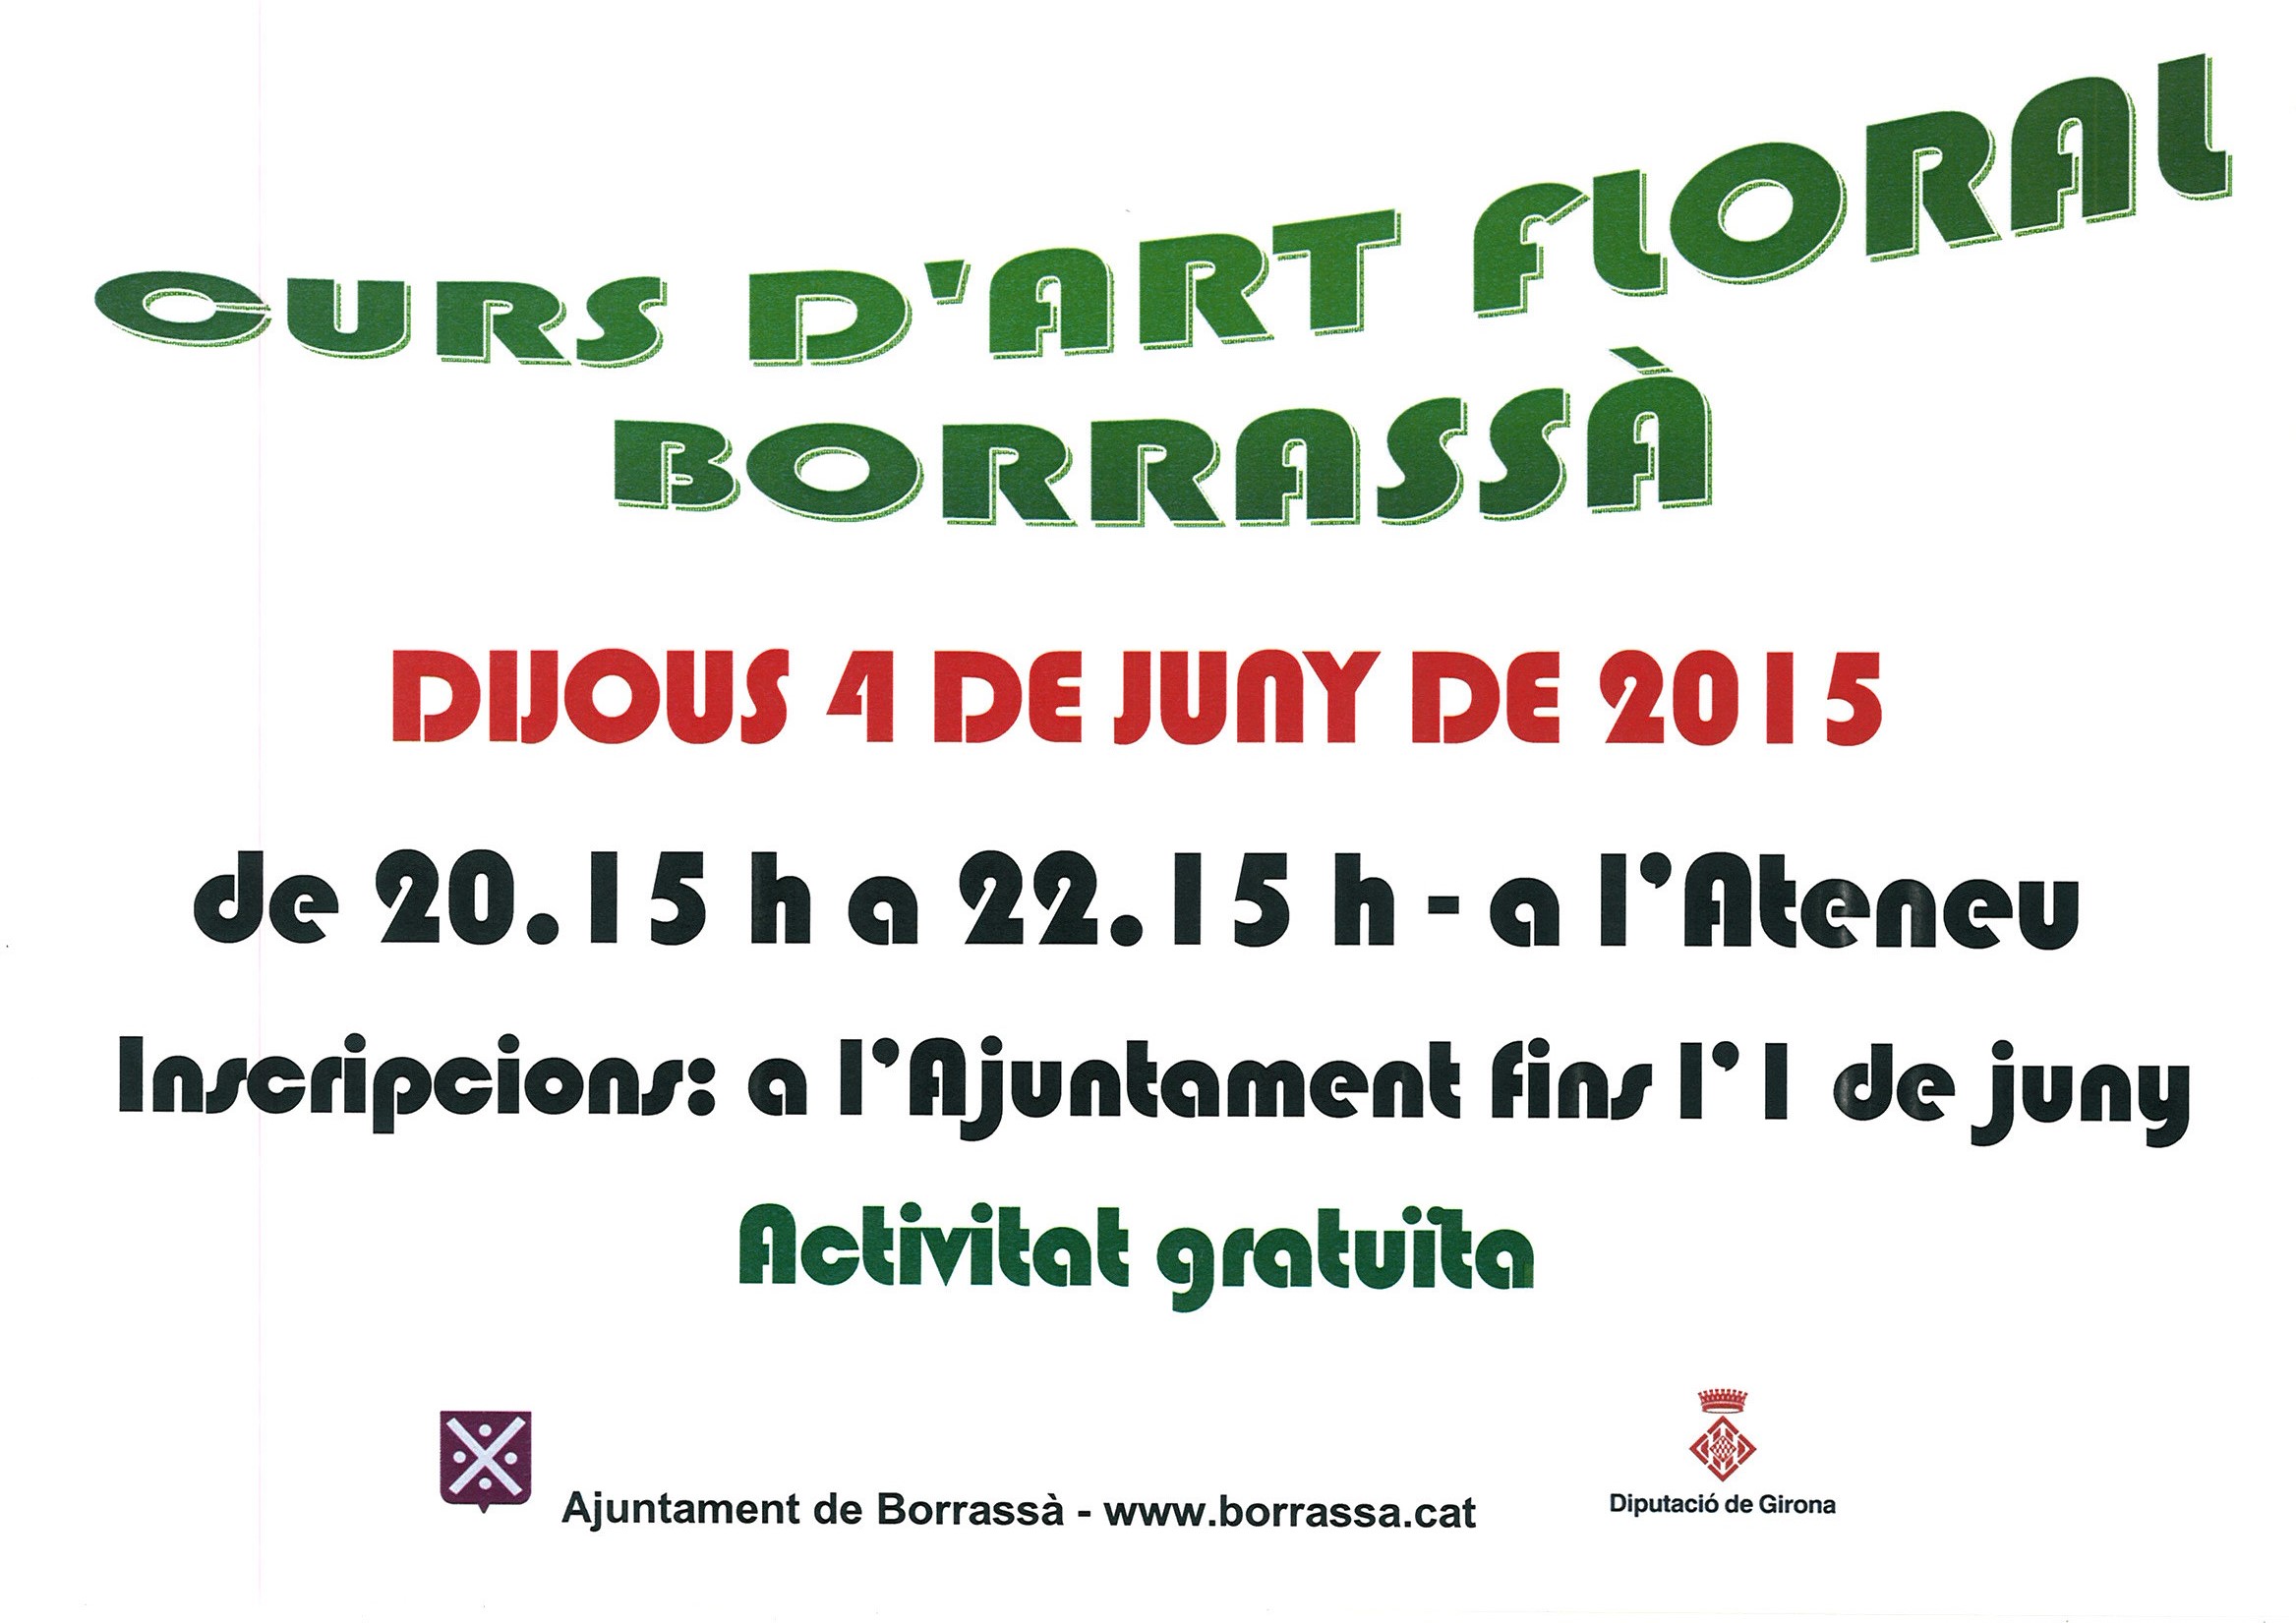 Fins el dilluns 1 de juny, les persones interessades es poden apuntar al Curs d'Art Floral, que es farà el dijous 4 de juny, amb motiu de la preparació de la desena edició de la Fira del Corpus. (La fira tindrà lloc el diumenge 7 de juny).